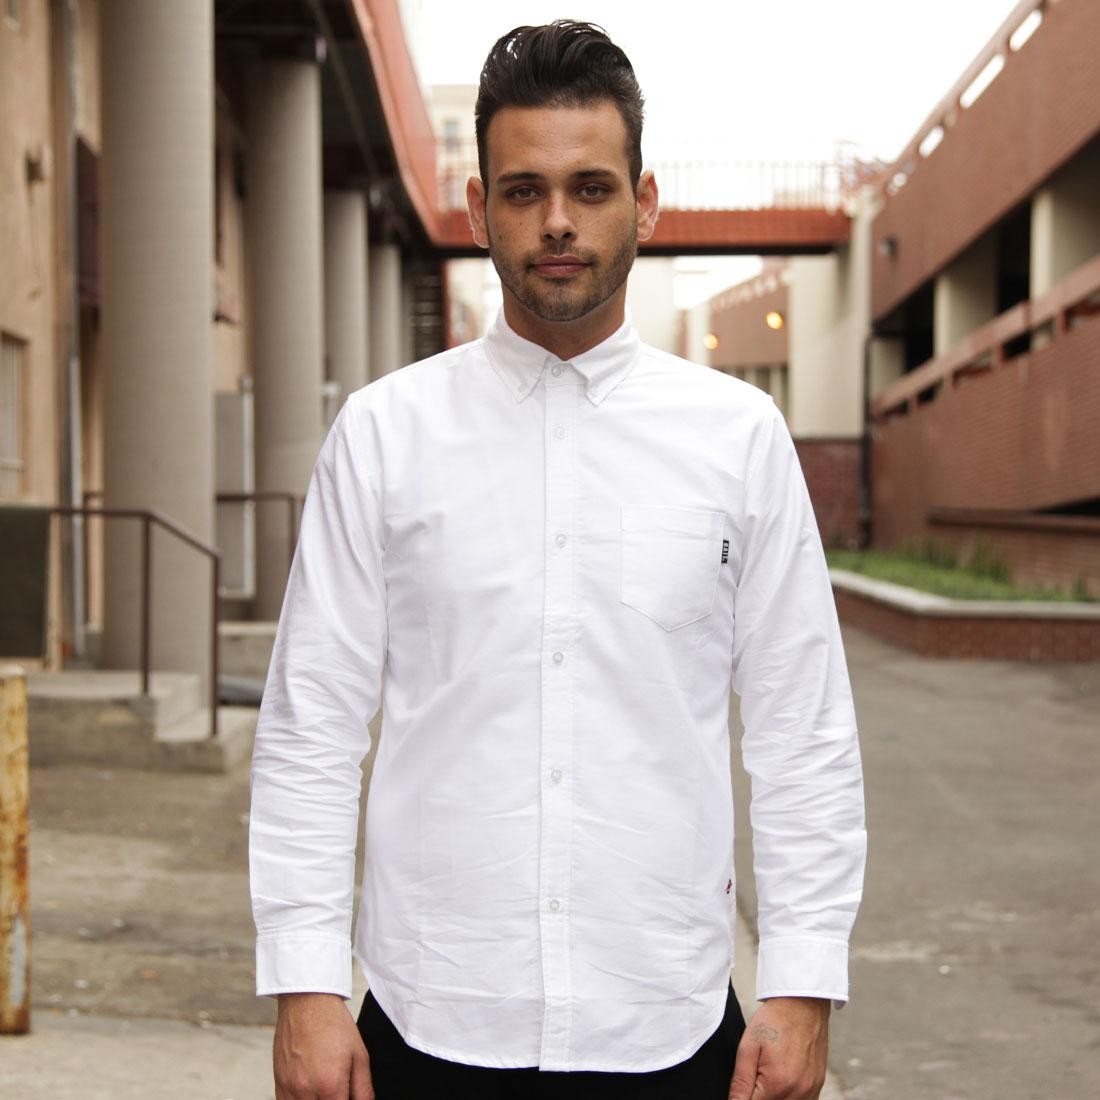 Cheap Urlfreeze Jordan Outlet Oxford Long Sleeve cargo shirt (white)